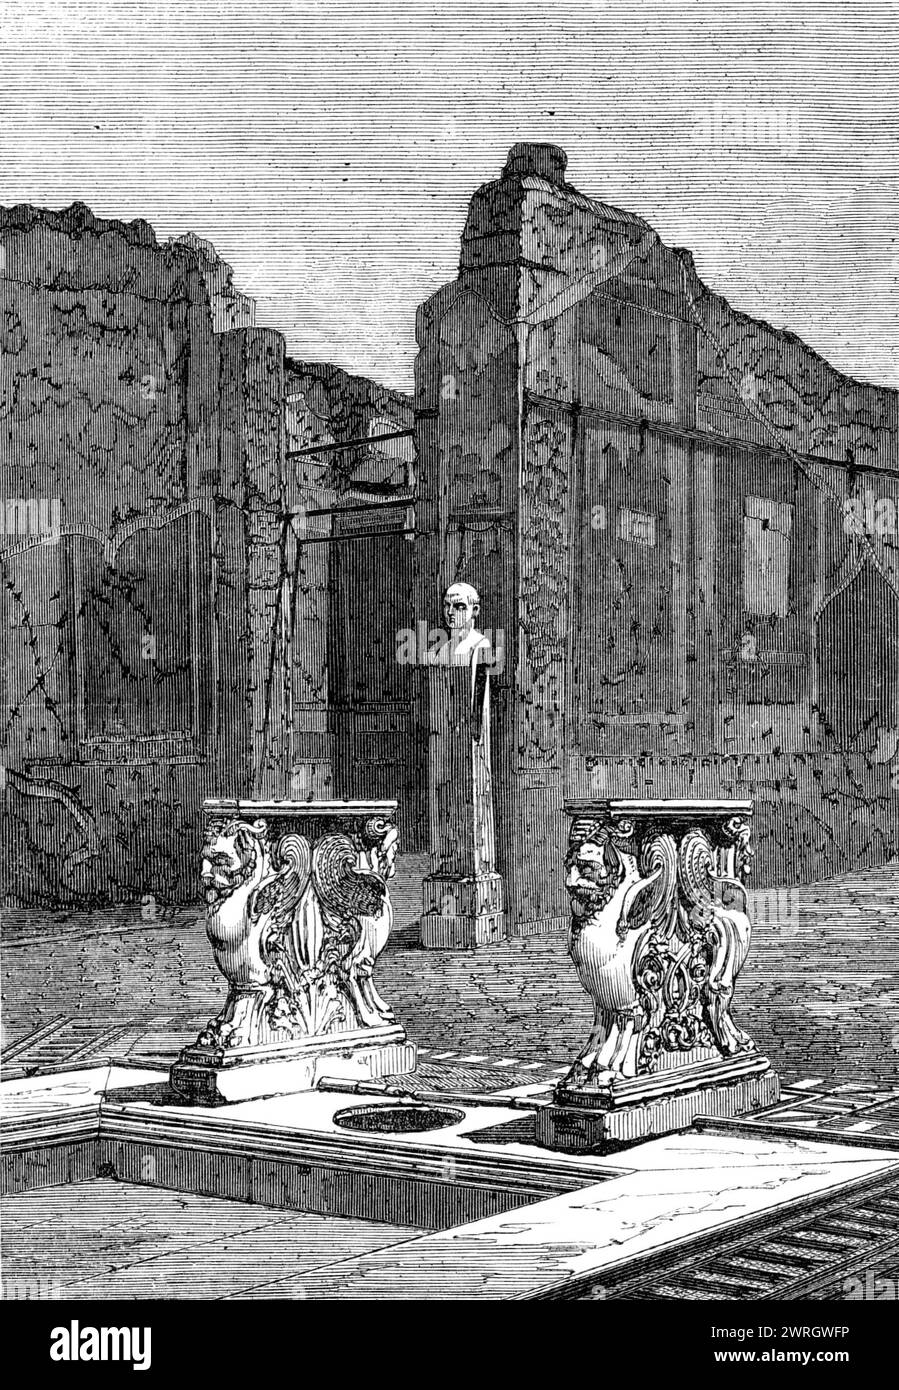 Découvertes récentes dans la ville enterrée de Pompéi : intérieur de la maison de Cornelius Rufus, 1864. Vue de l'intérieur de la maison de Cornelius Rufus... les caractéristiques habituelles de l'architecture domestique romaine, comme dans d'autres demeures de grands et d'hommes riches à Pompéi, peuvent être facilement reconnues dans cet exemple. Voici l'impluvium, ou bassin peu profond, pour attraper l'eau de pluie, au centre de la cour ouverte autour de laquelle sont disposées les chambres privées de la famille ; le buste de Cornelius Rufus lui-même, sur un piédestal inscrit de son nom, est vu au-delà. Les griffins sculptés, ou monstres avec RA Banque D'Images